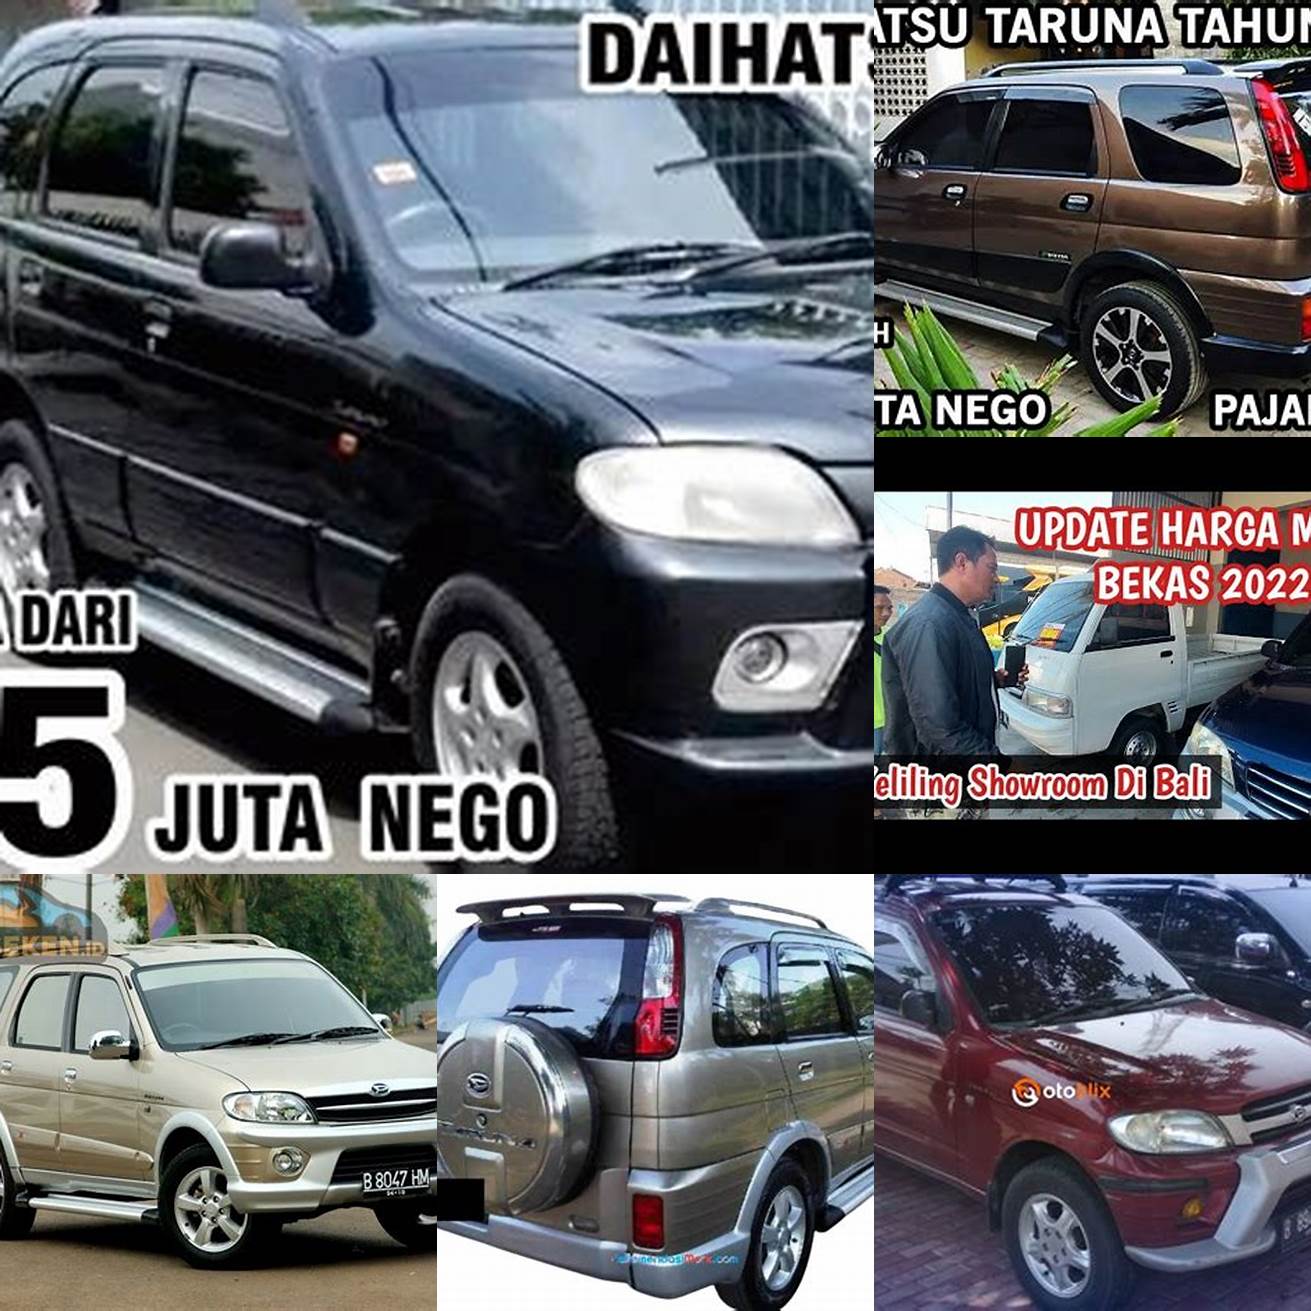 Harga mobil Taruna 2014 di Bali